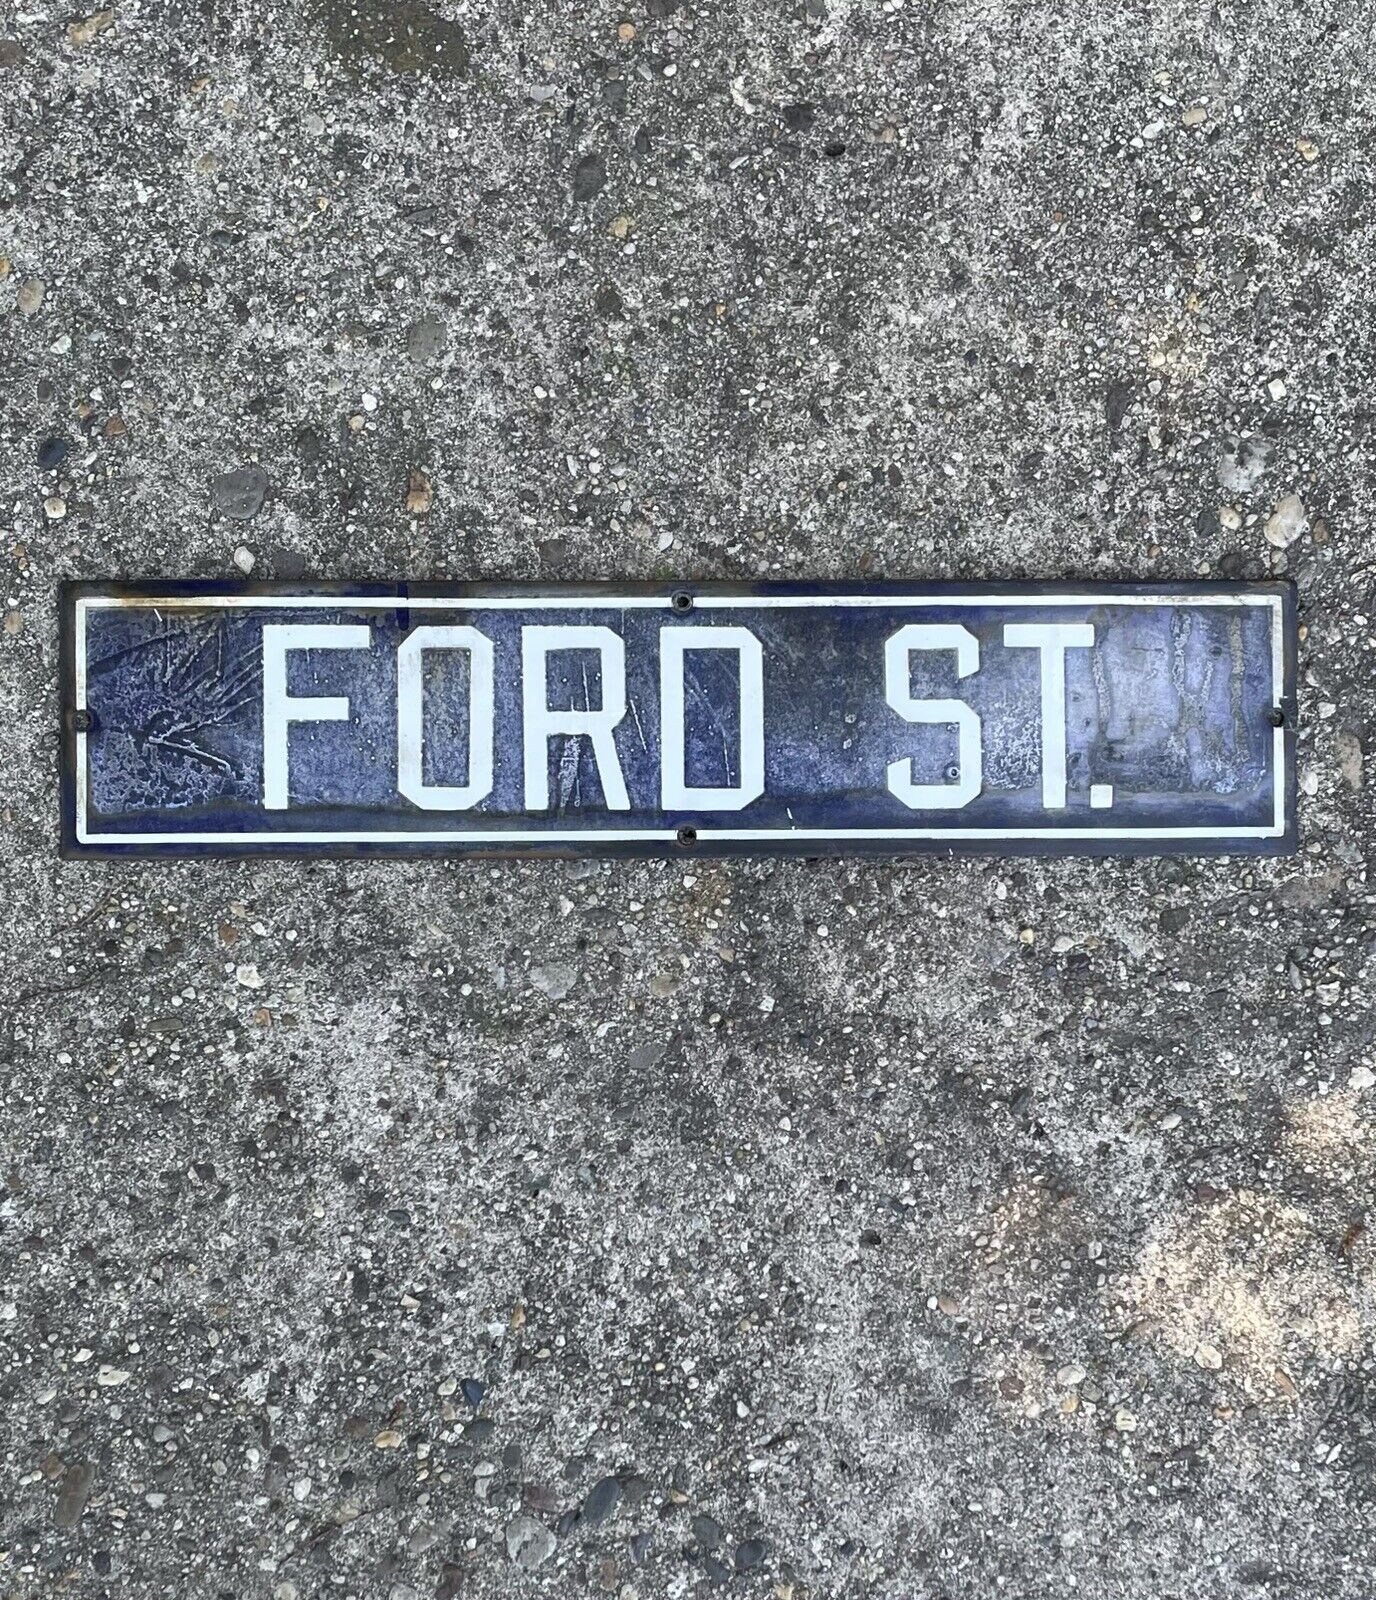 Antique 1900s FORD STREET Detroit Automotive Street Sign Cobalt Blue Porcelain